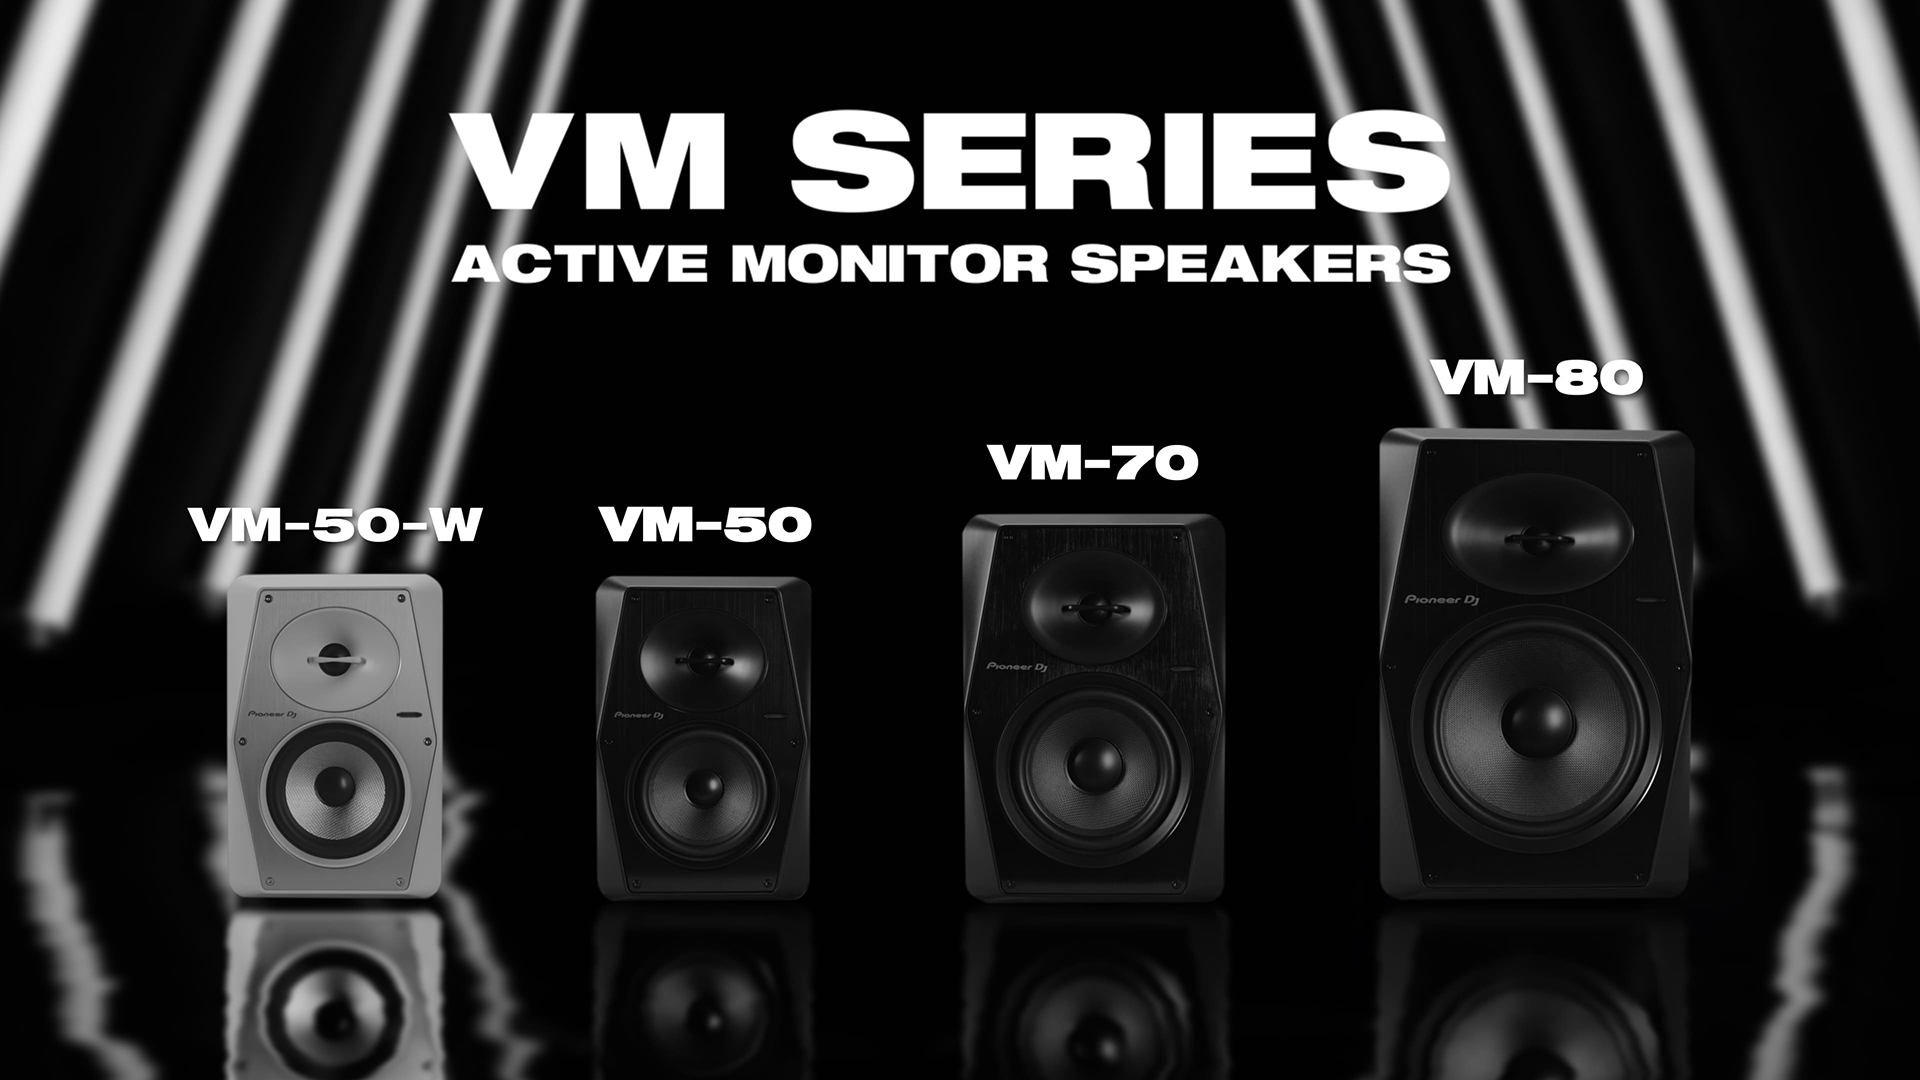 VM-70 - 6.5” active monitor speaker (Black)